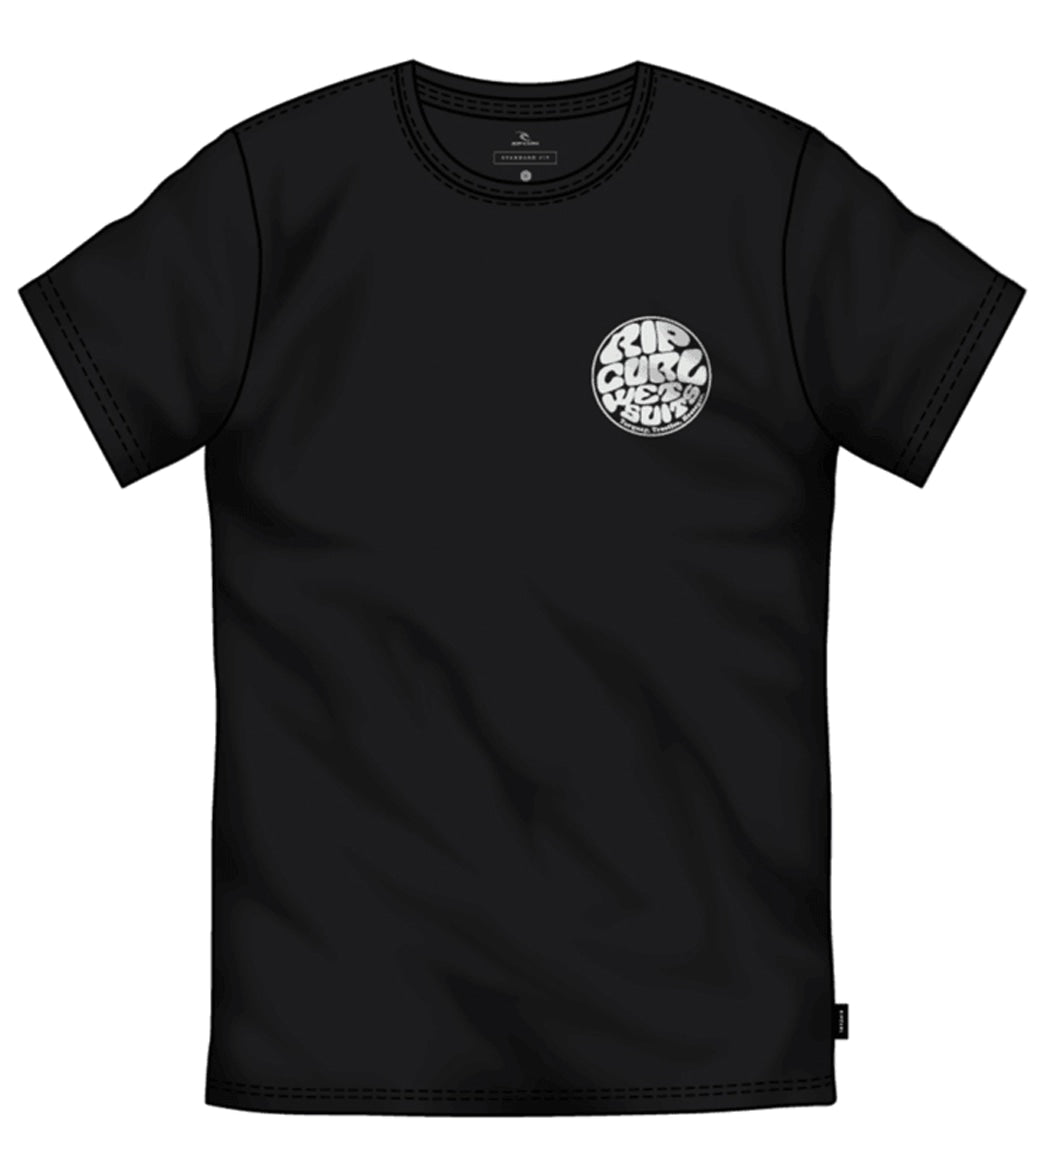 Rip Curl Men's Wettie Essential Shirt - Black Large - Swimoutlet.com